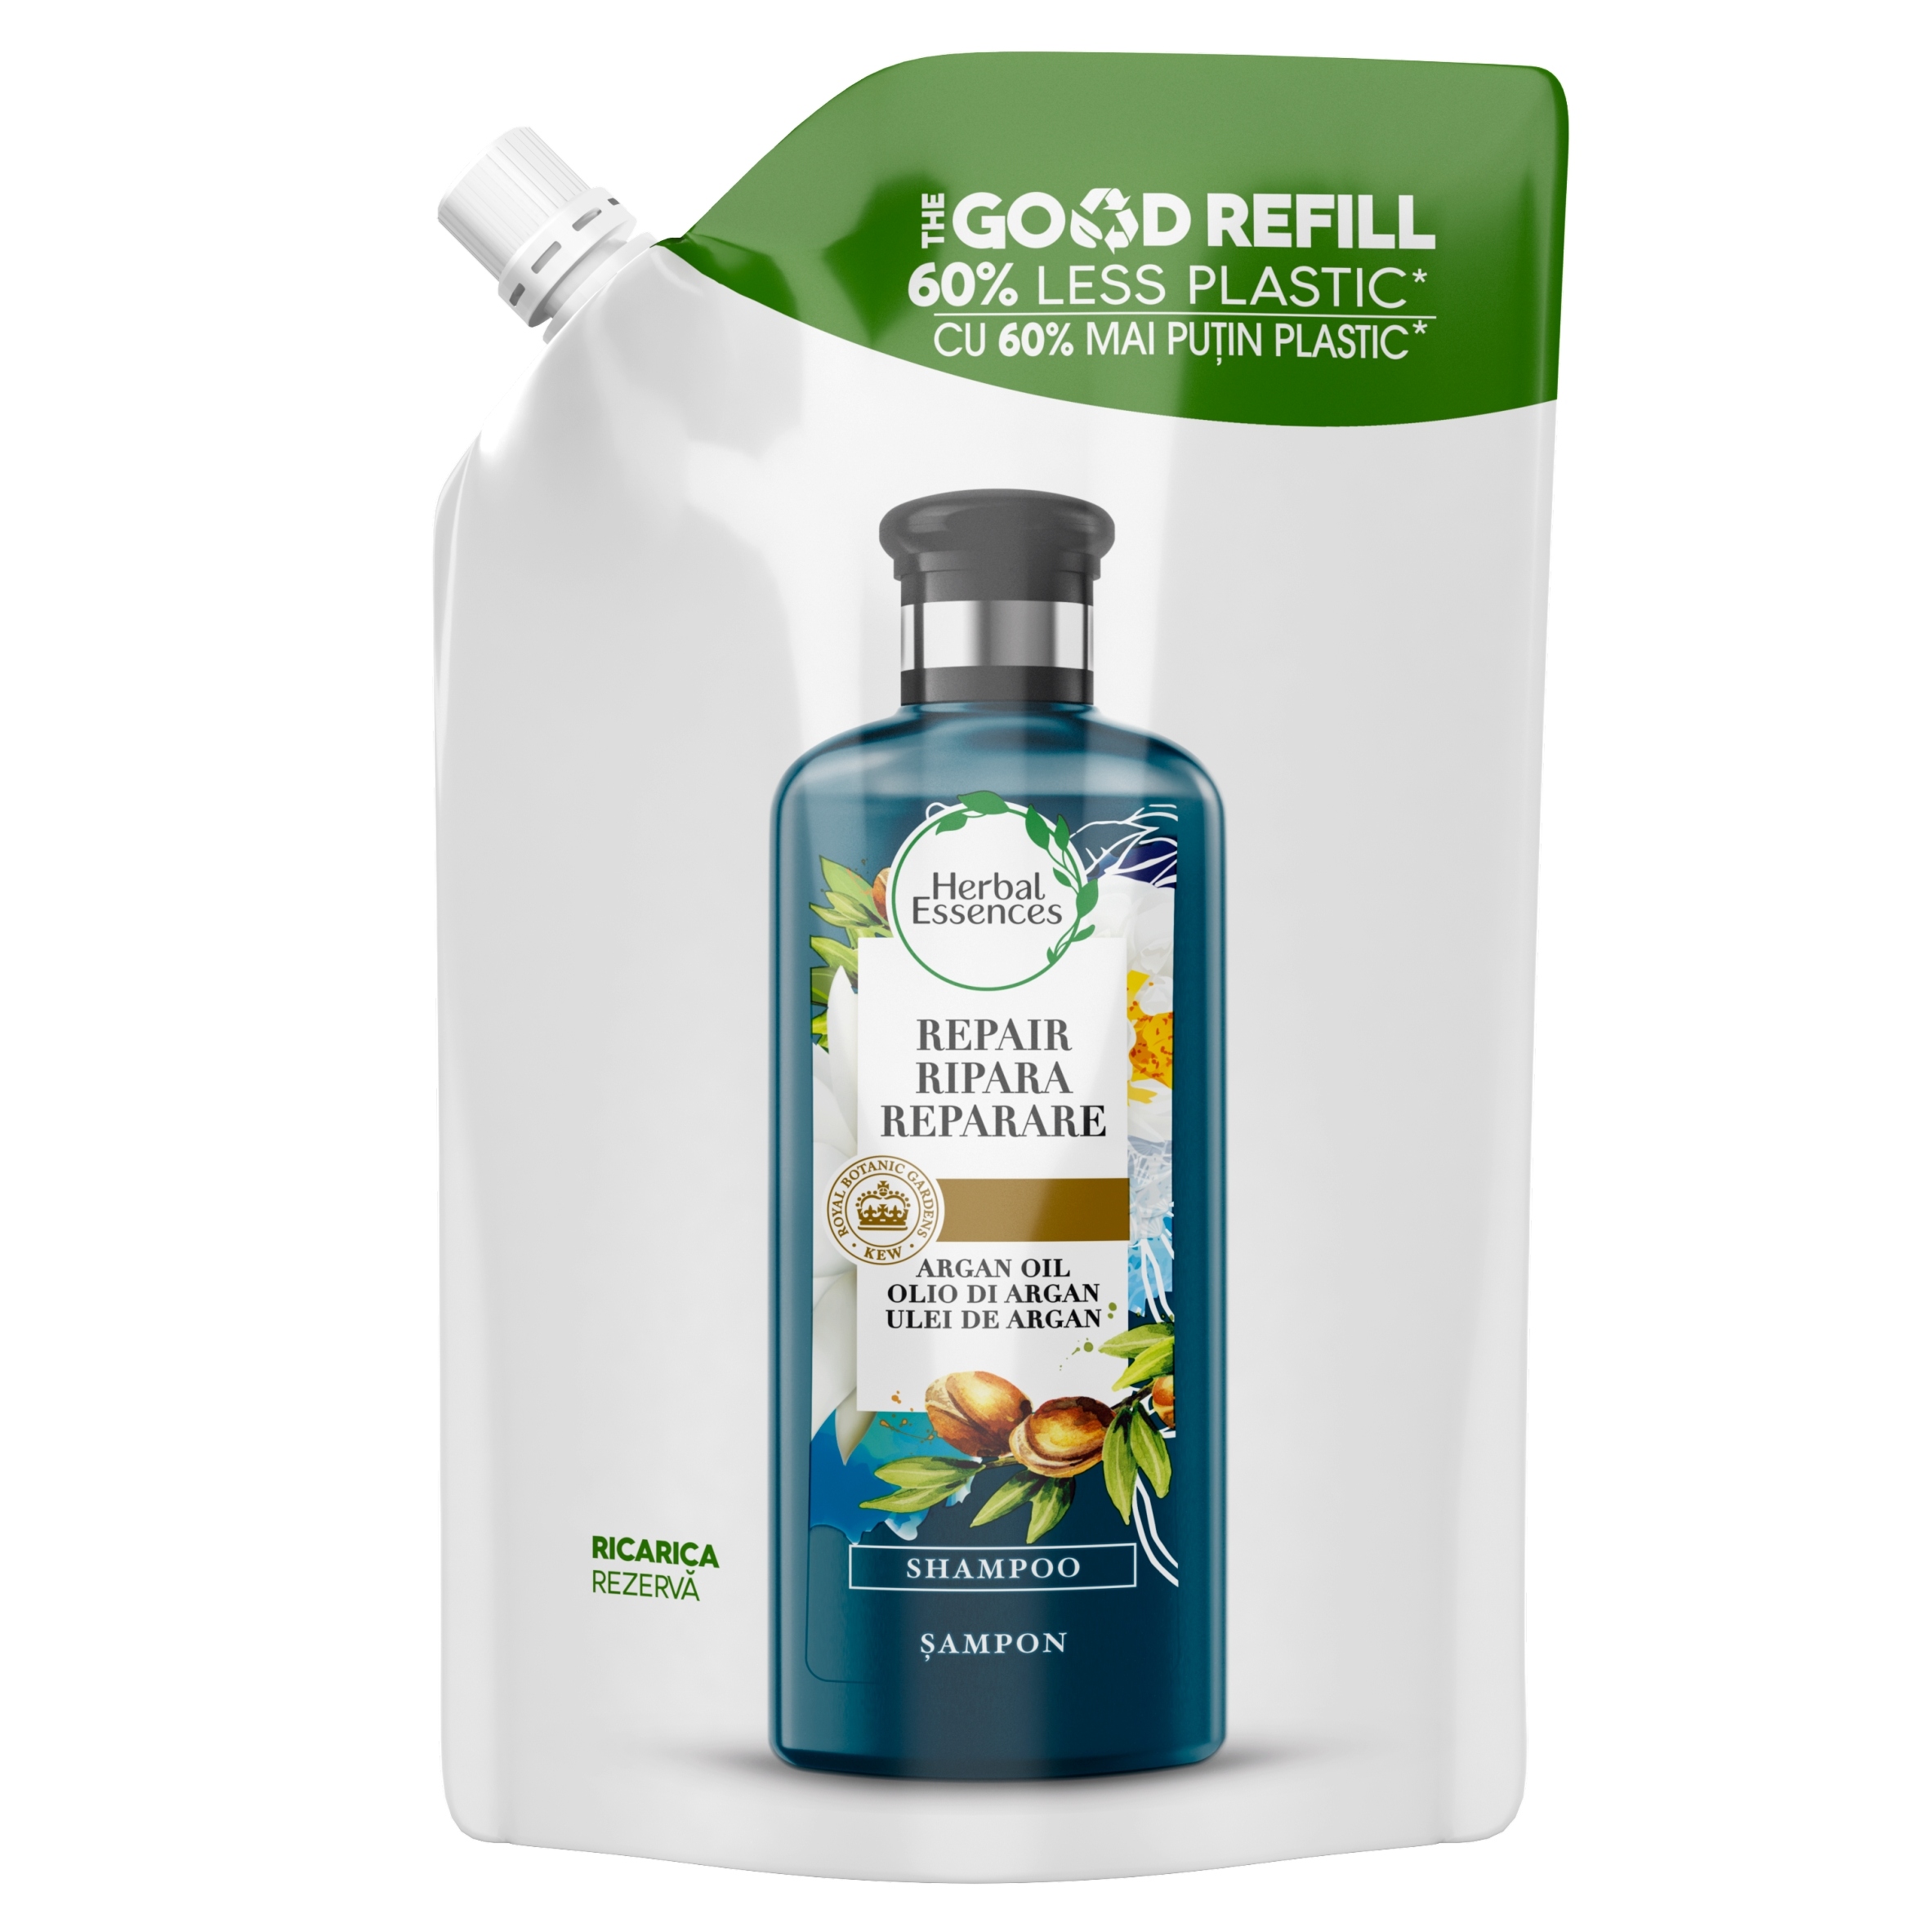 herbal essence bio renew szampon dodający